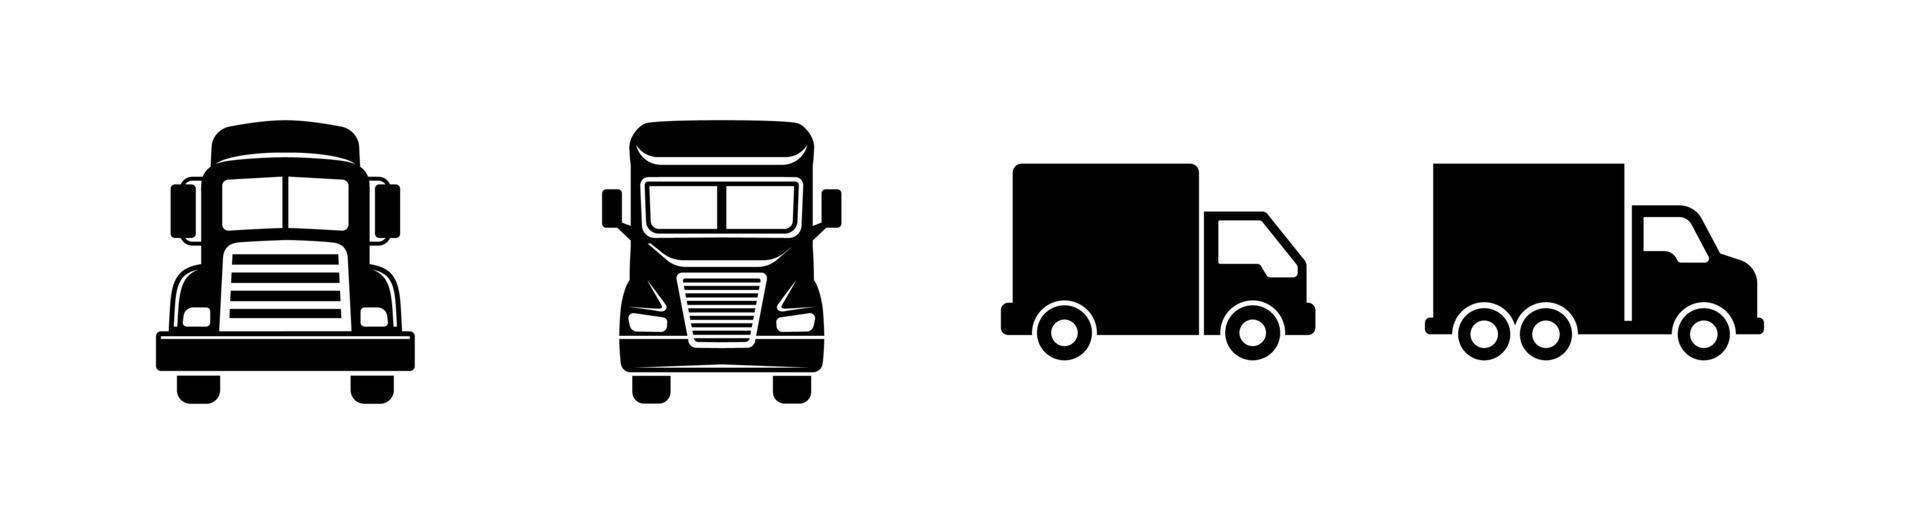 Truck Icon Set von 4, Designelement geeignet für Websites, Printdesign oder App vektor